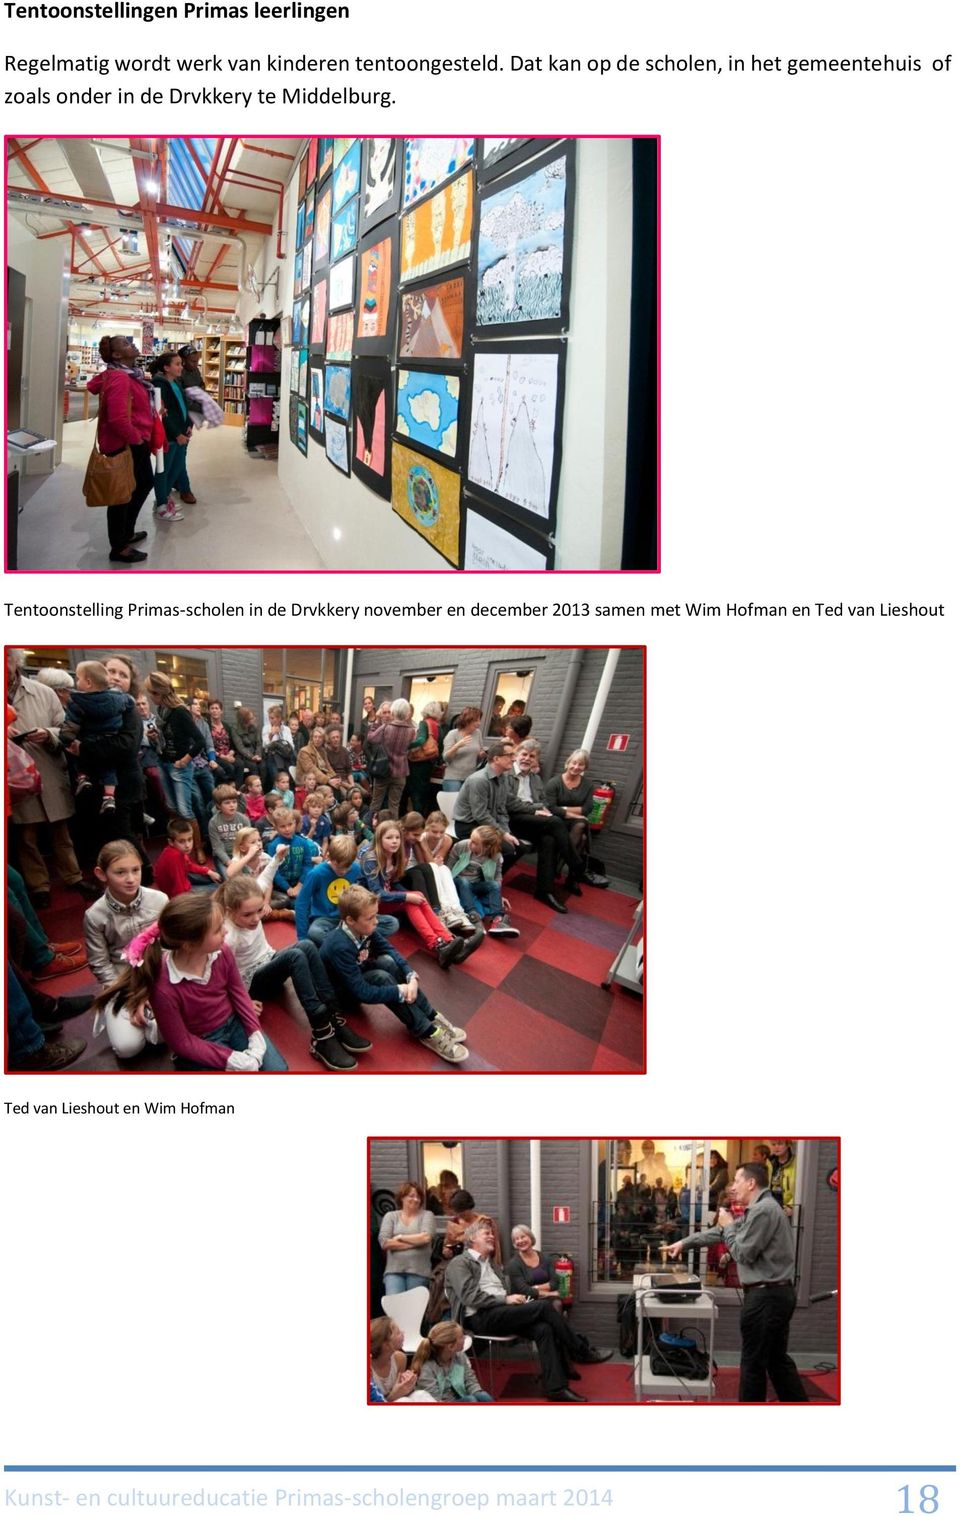 Tentoonstelling Primas-scholen in de Drvkkery november en december 2013 samen met Wim Hofman